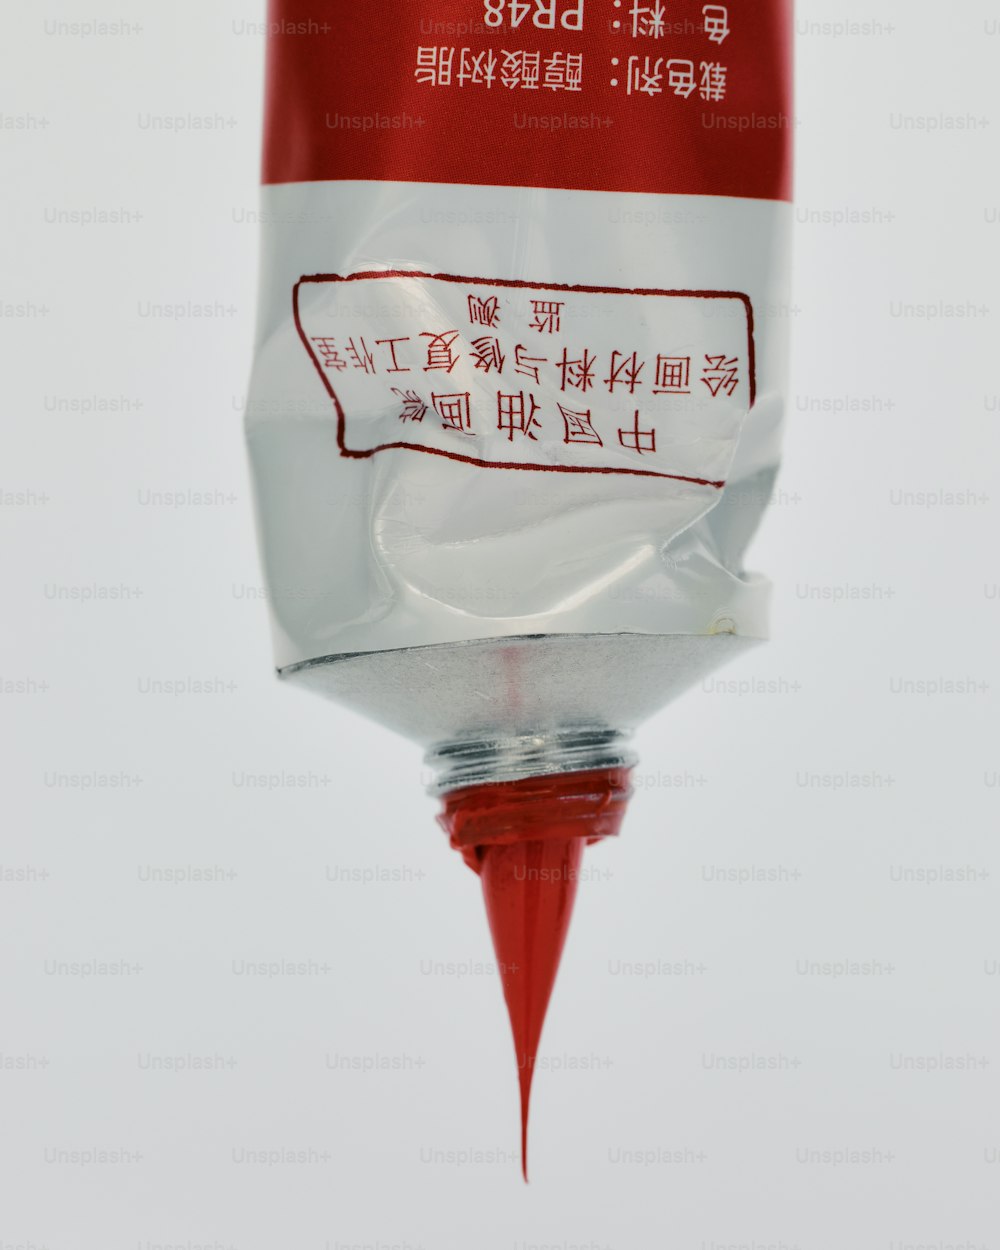 中国語の文字が書かれた赤と白の物体のクローズアップ